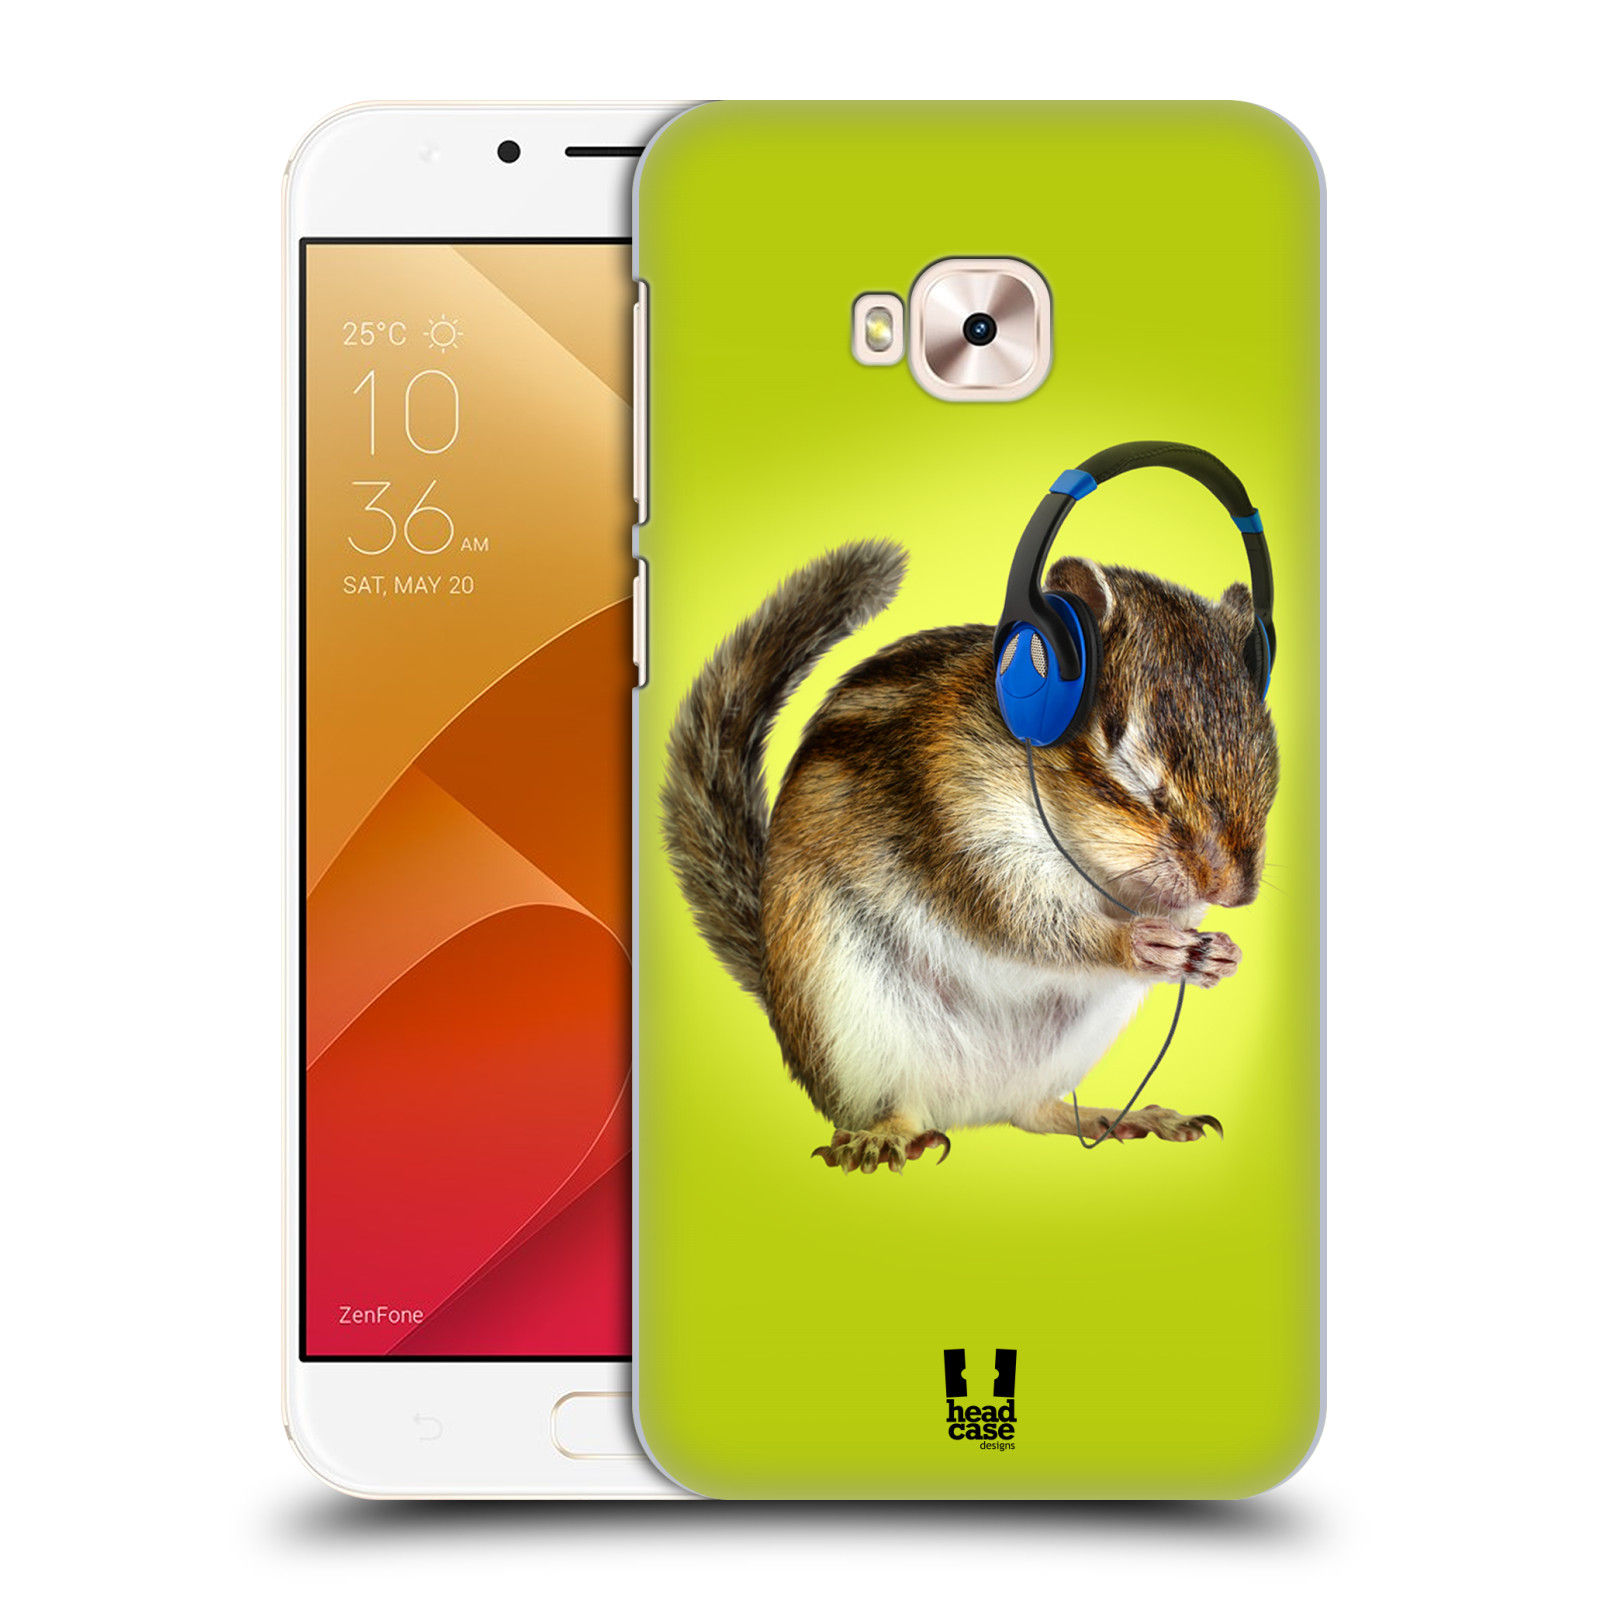 HEAD CASE plastový obal na mobil Asus Zenfone 4 Selfie Pro ZD552KL vzor Legrační zvířátka veverka se sluchátky